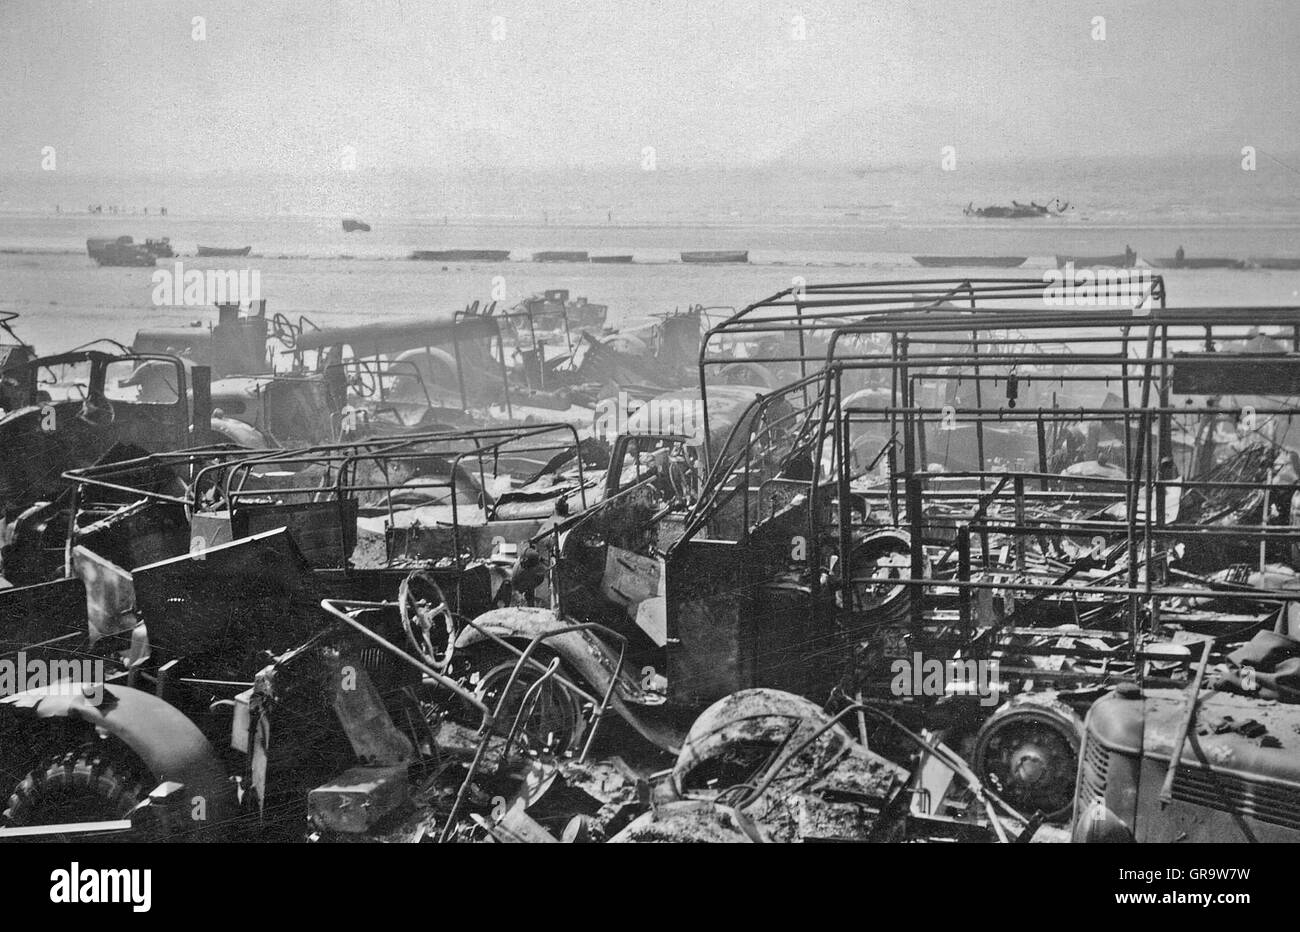 Destruction In World War Ii In 1940 In Belgium Stock Photo